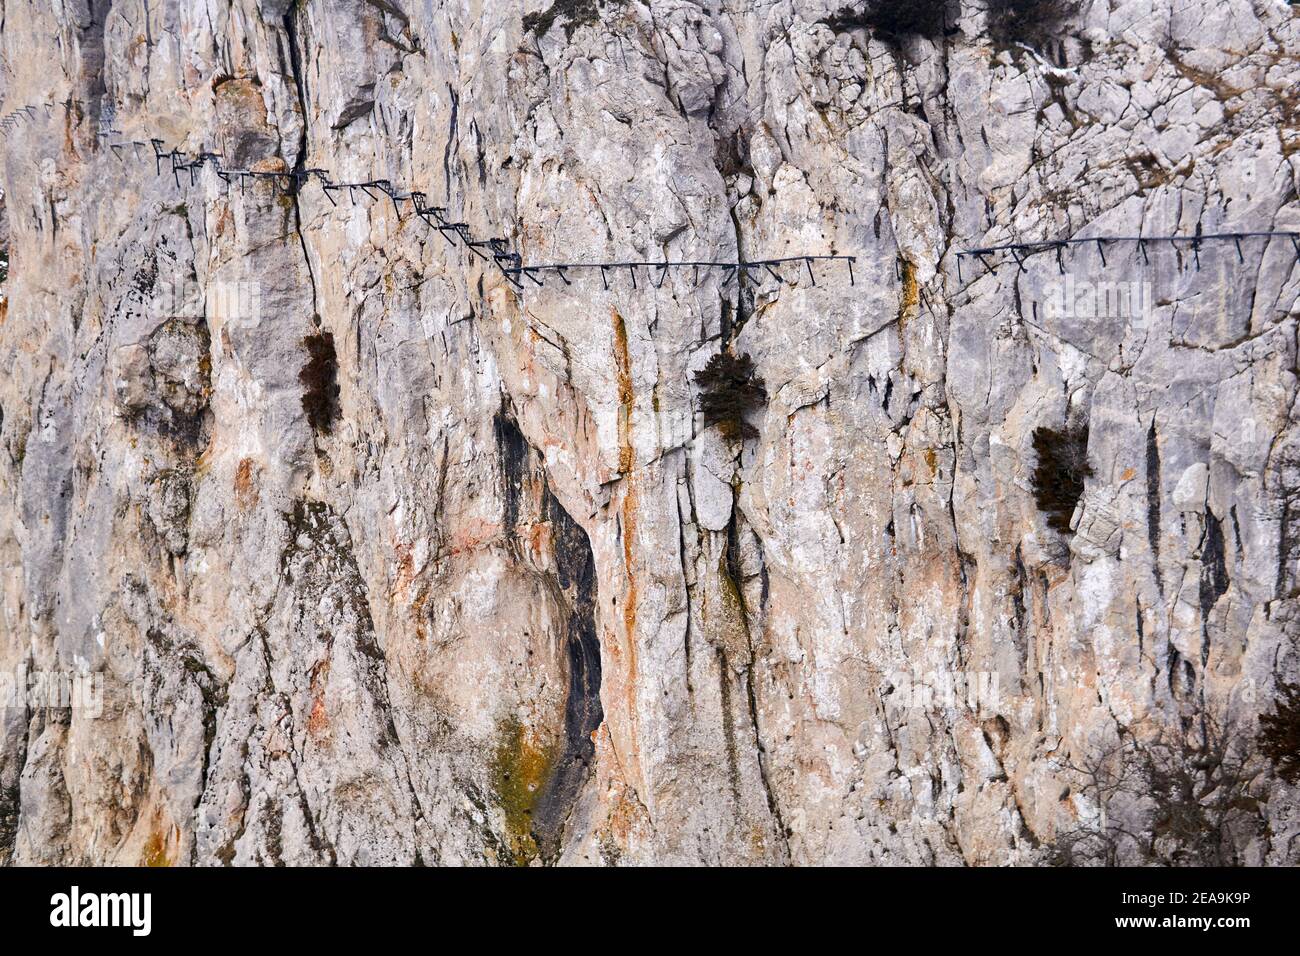 sfondo - la superficie di una roccia verticale enorme con un percorso sospeso distrutto su di esso Foto Stock